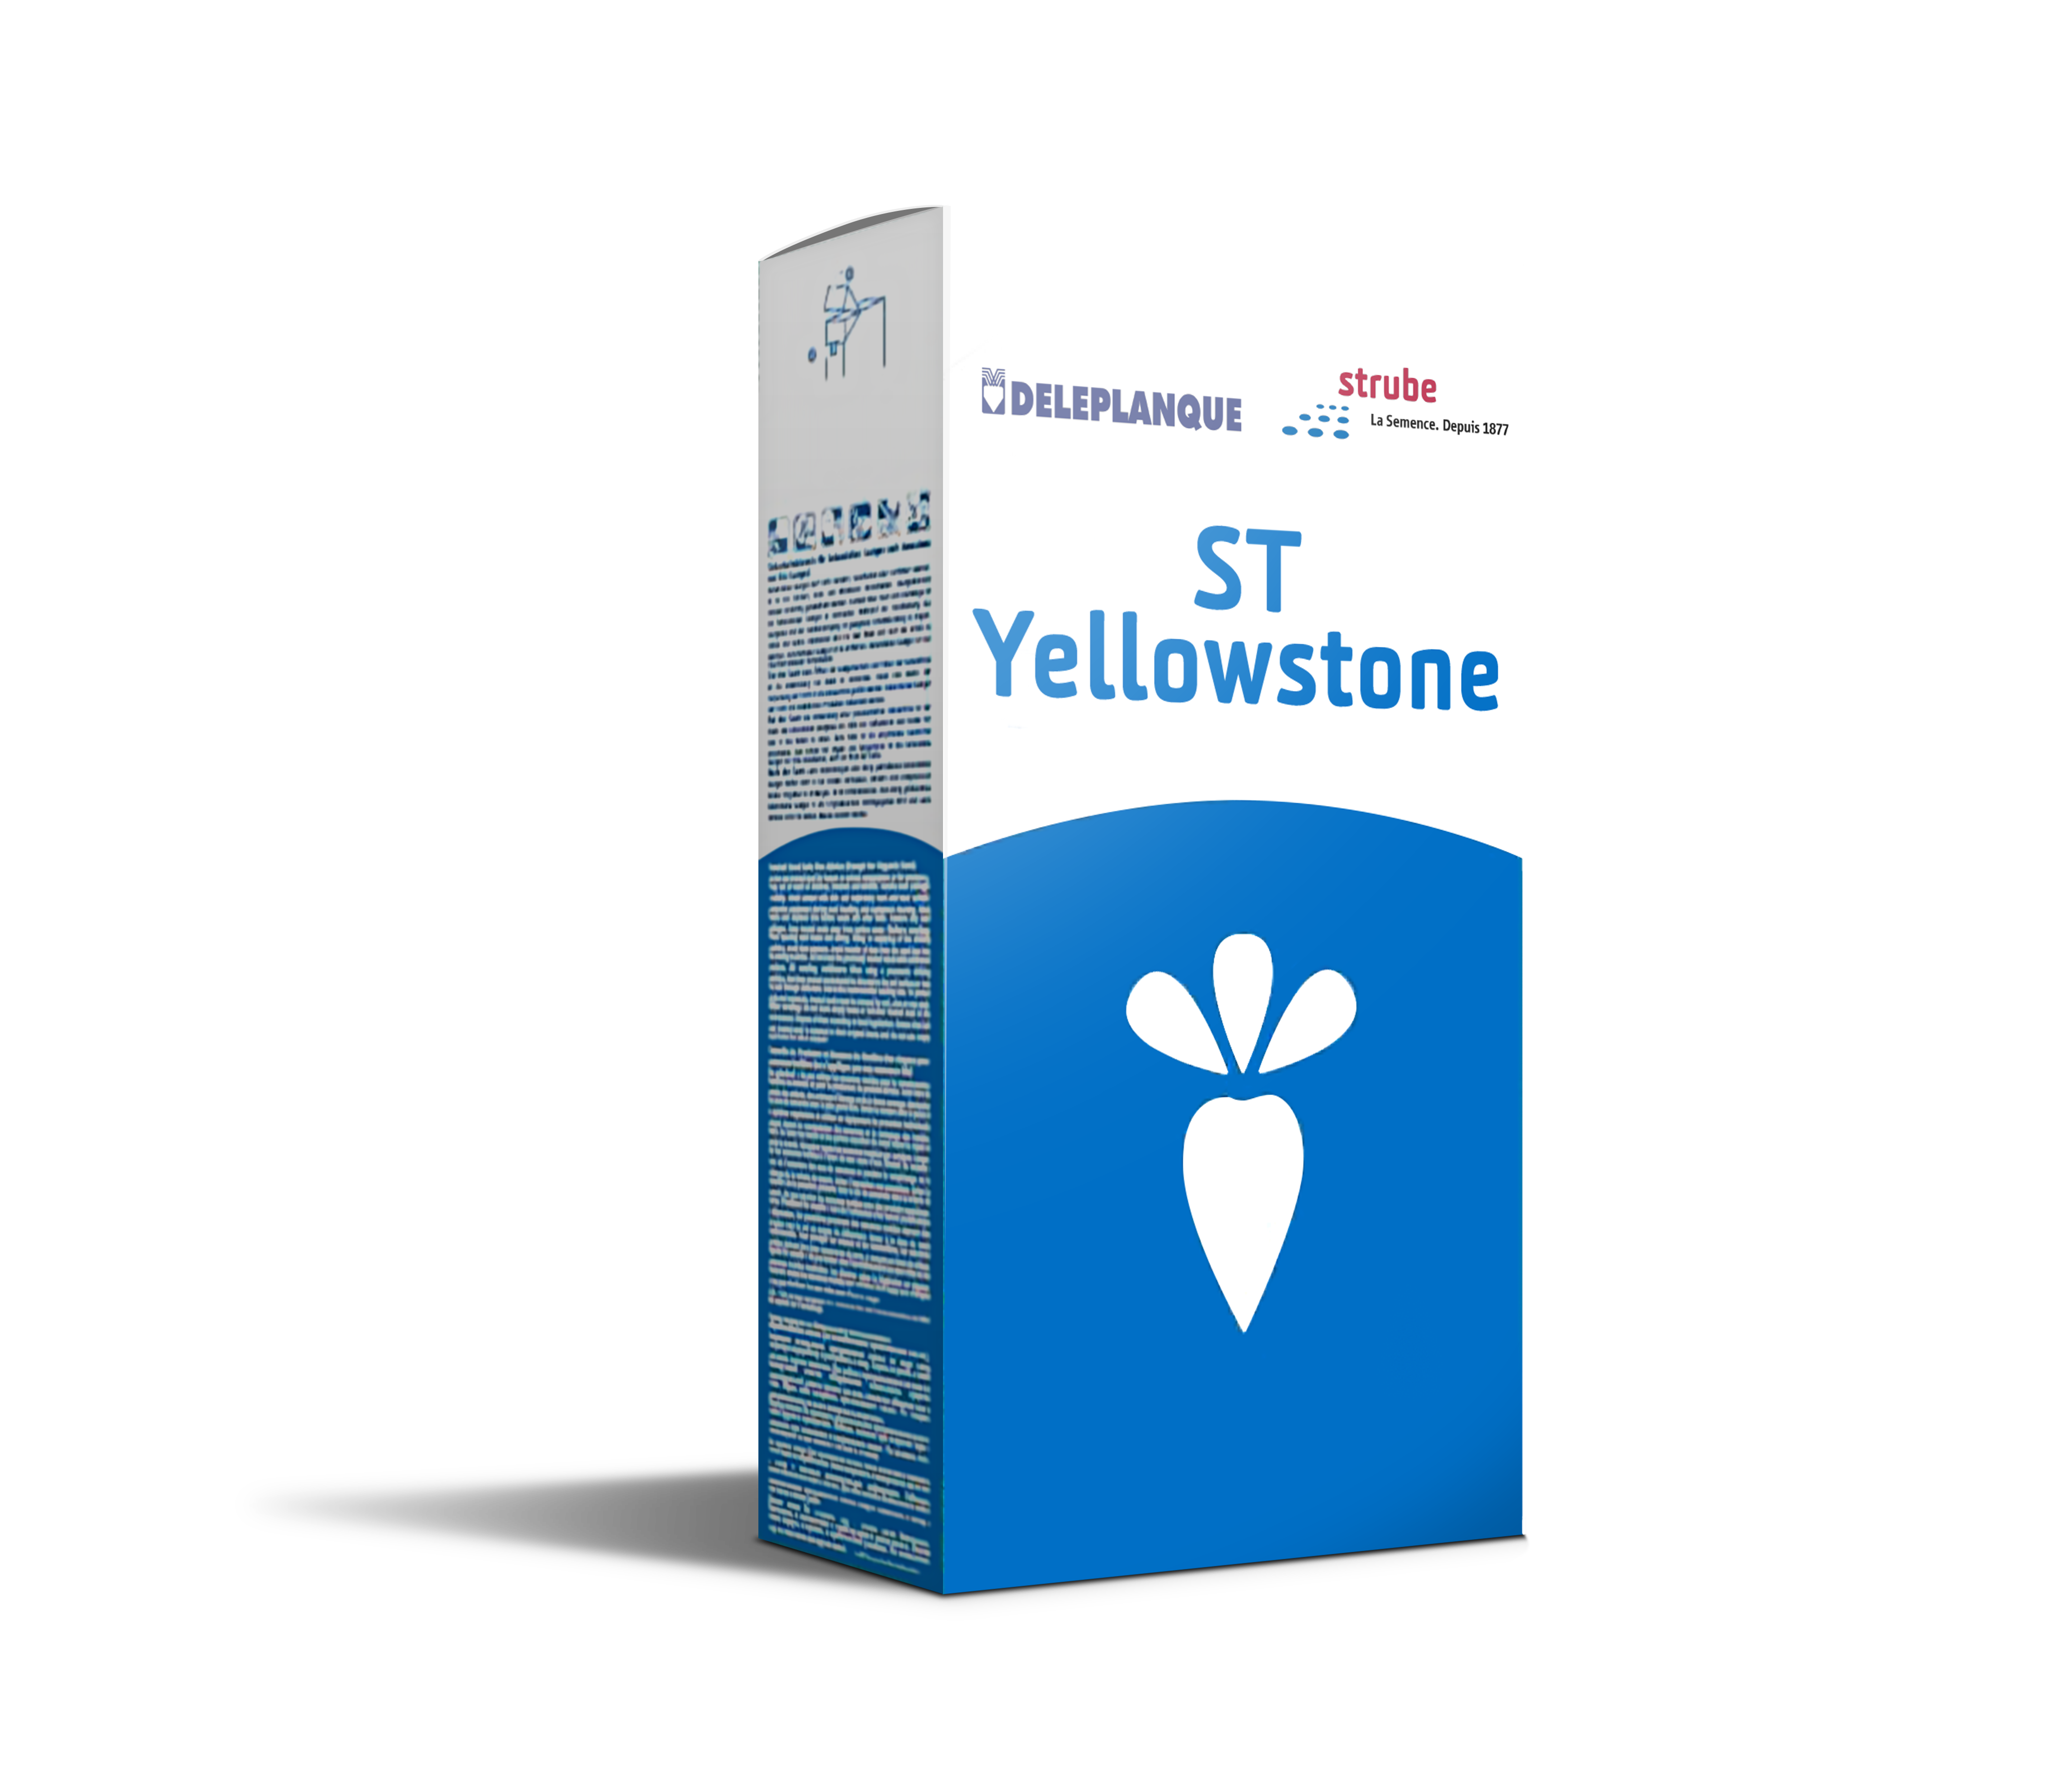 Visuel variété ST Yellowstone